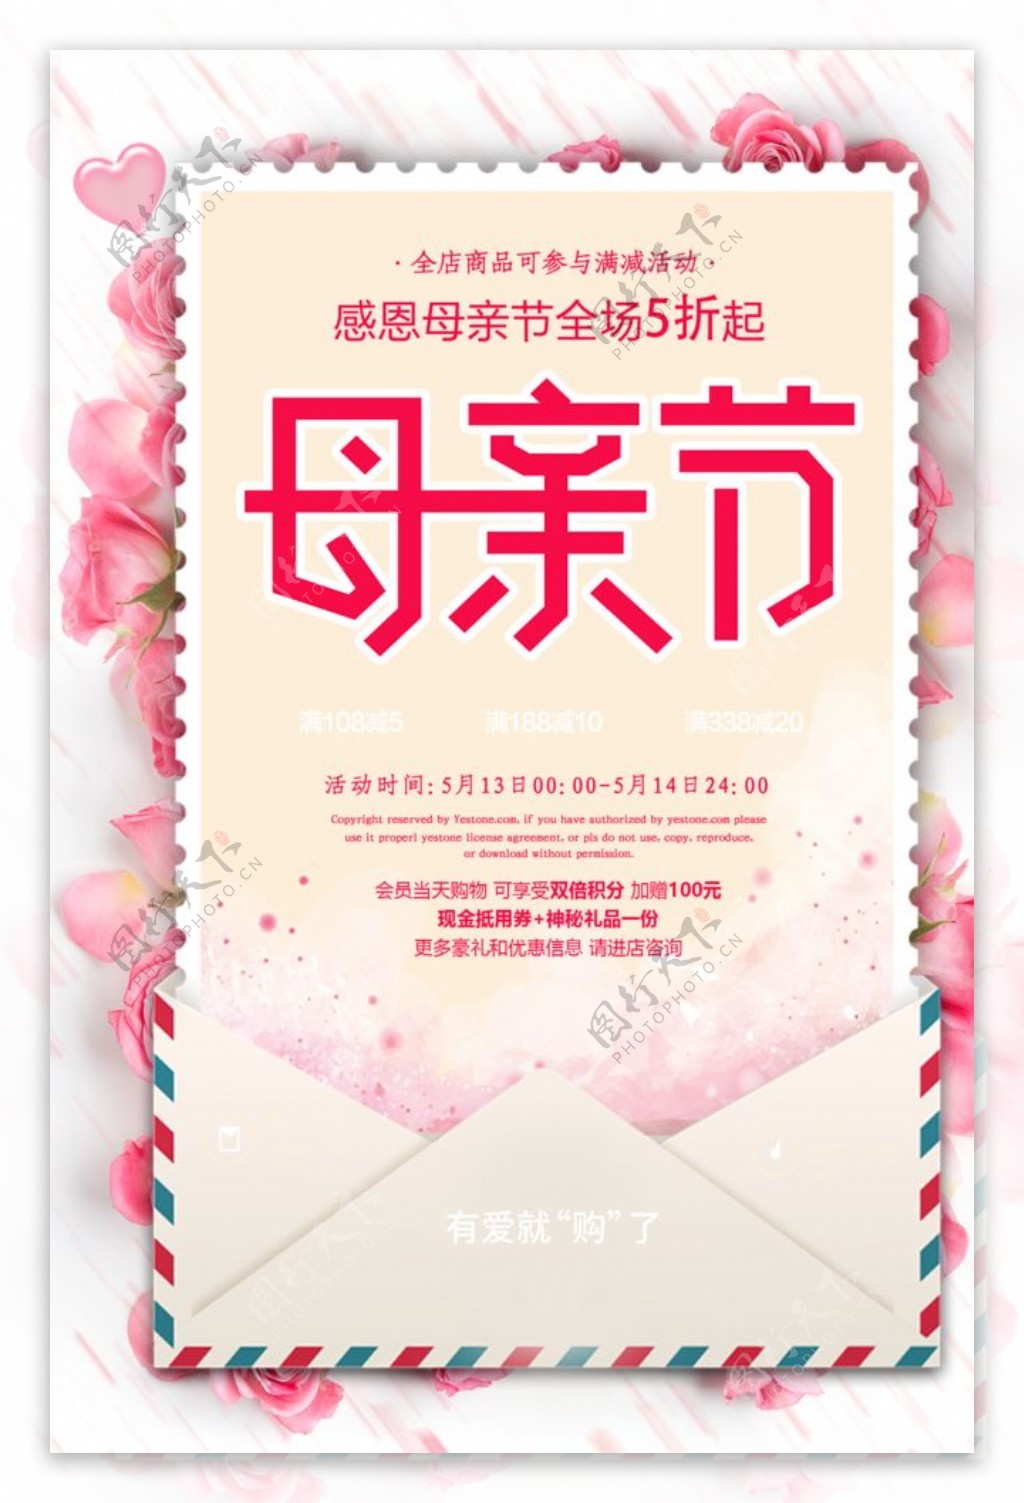 简约粉色系感恩母亲节宣传海报